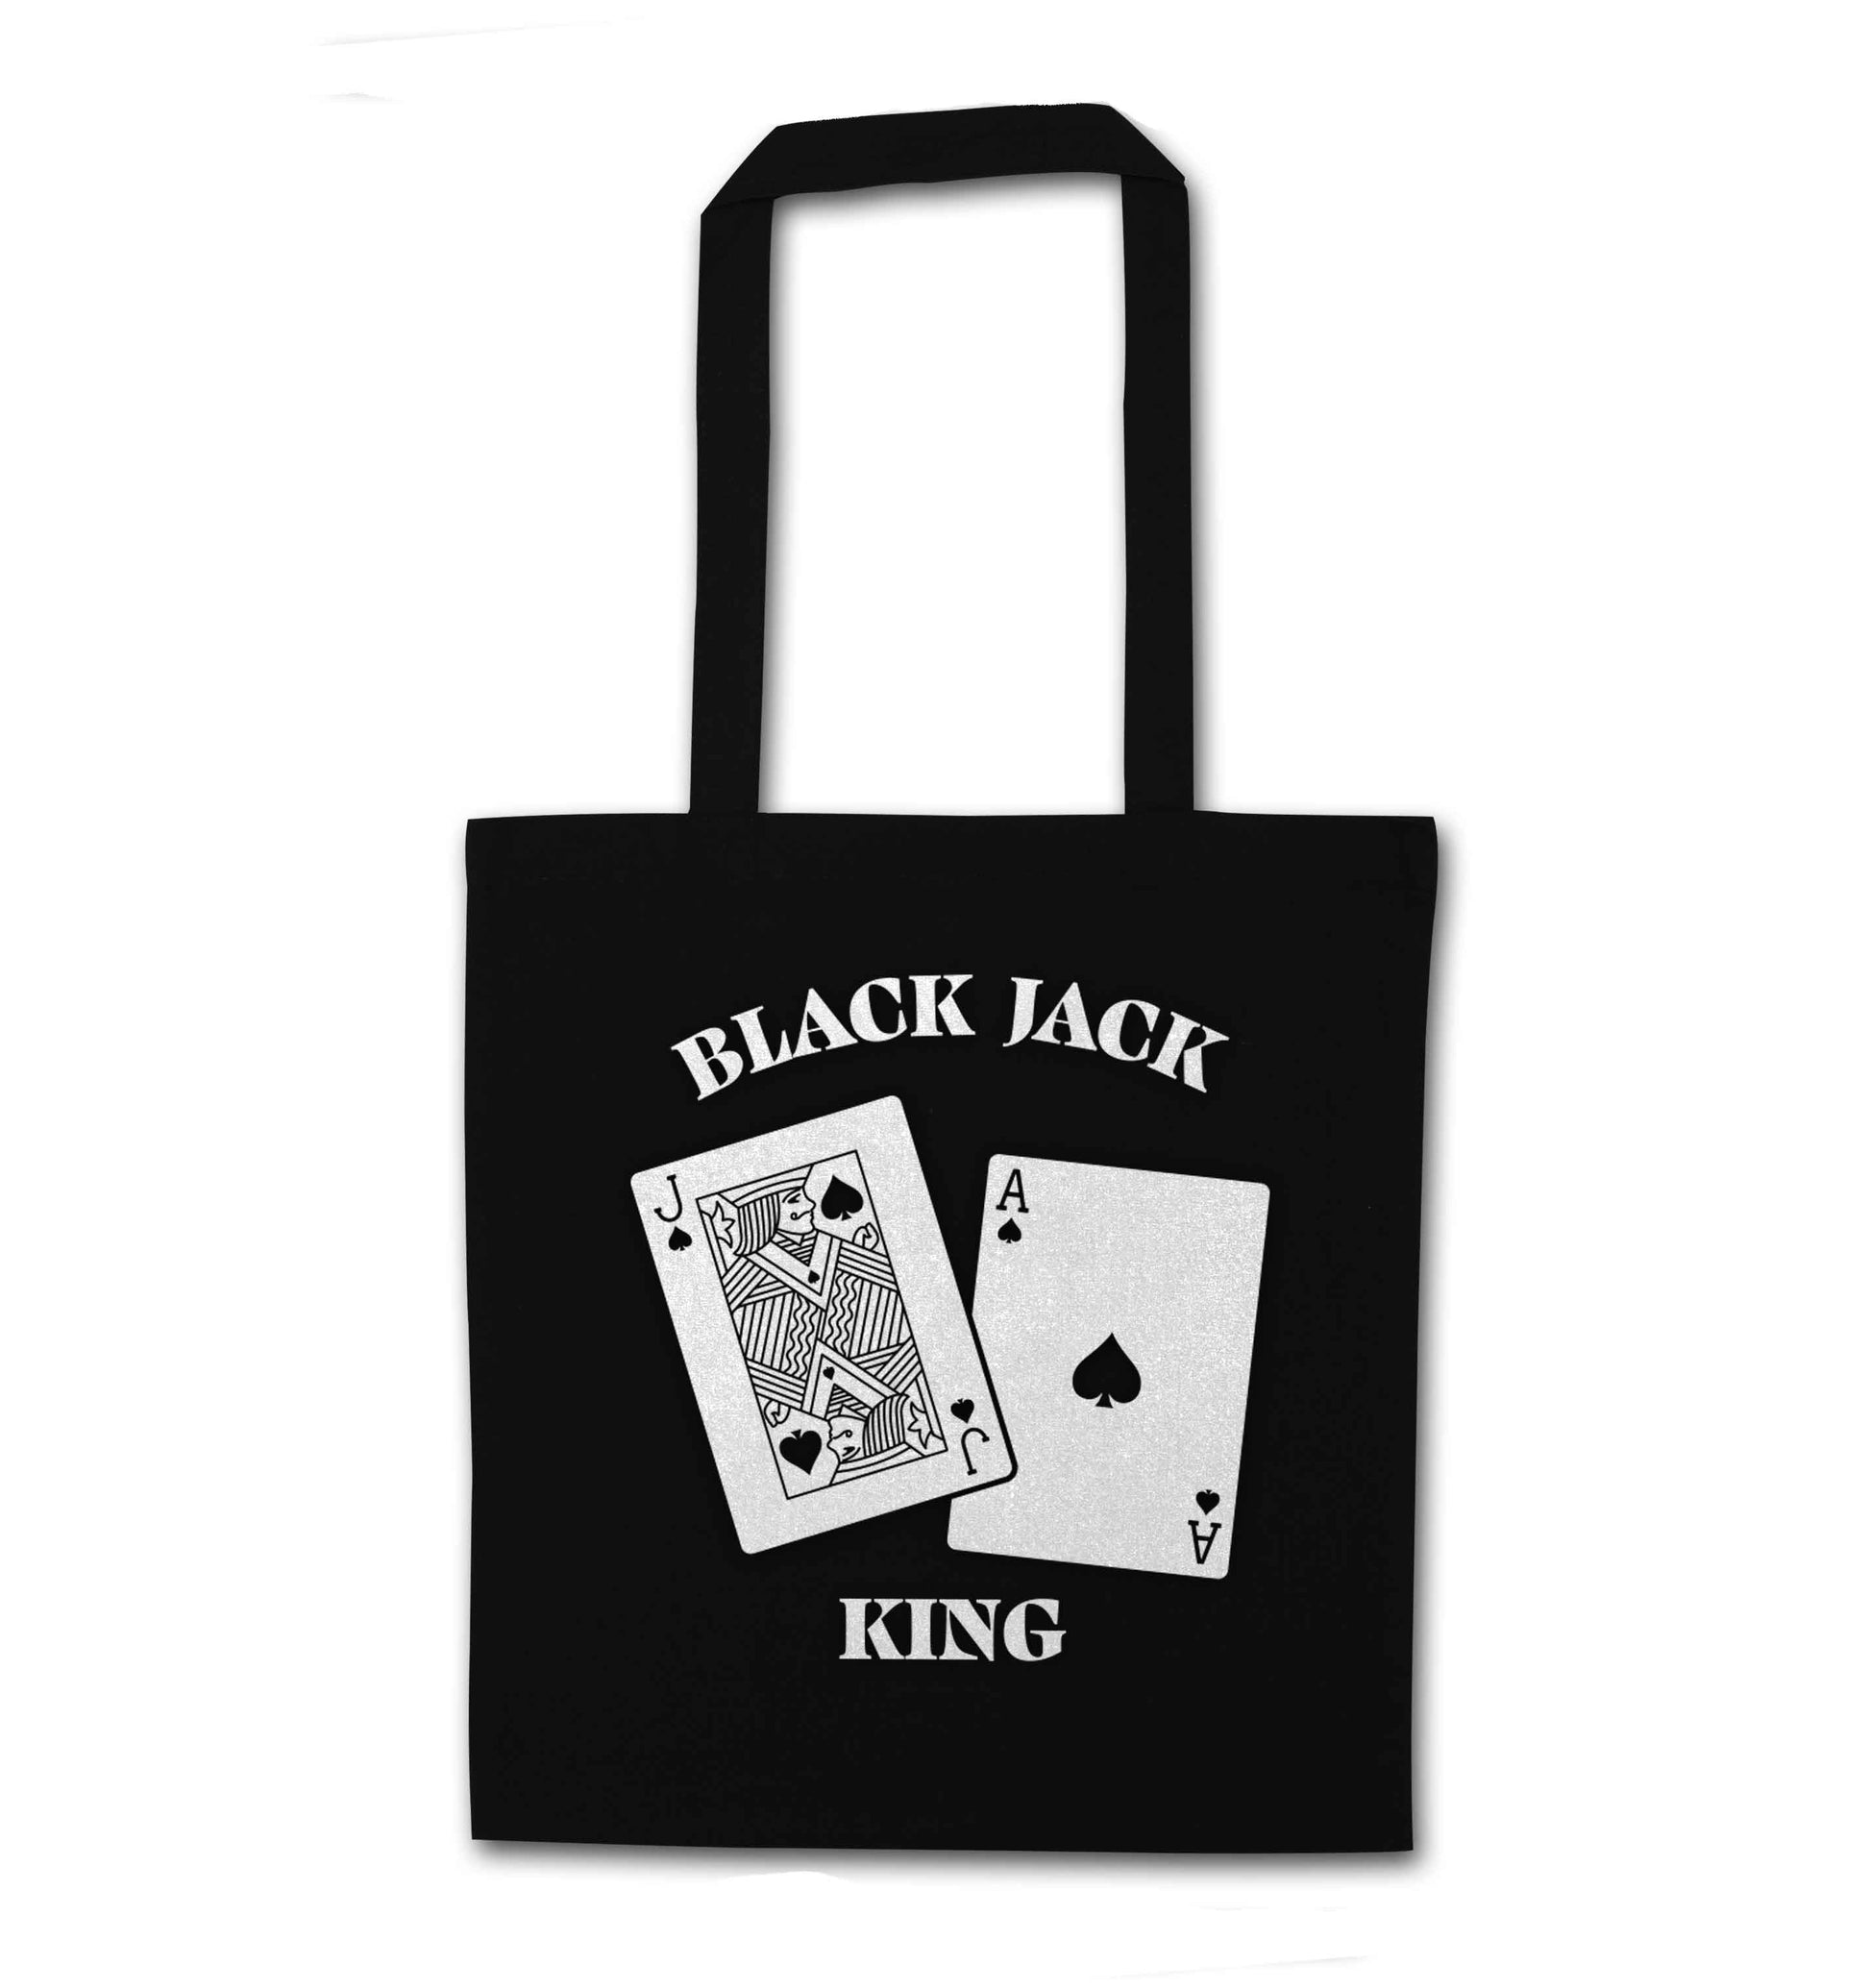 Blackjack king black tote bag